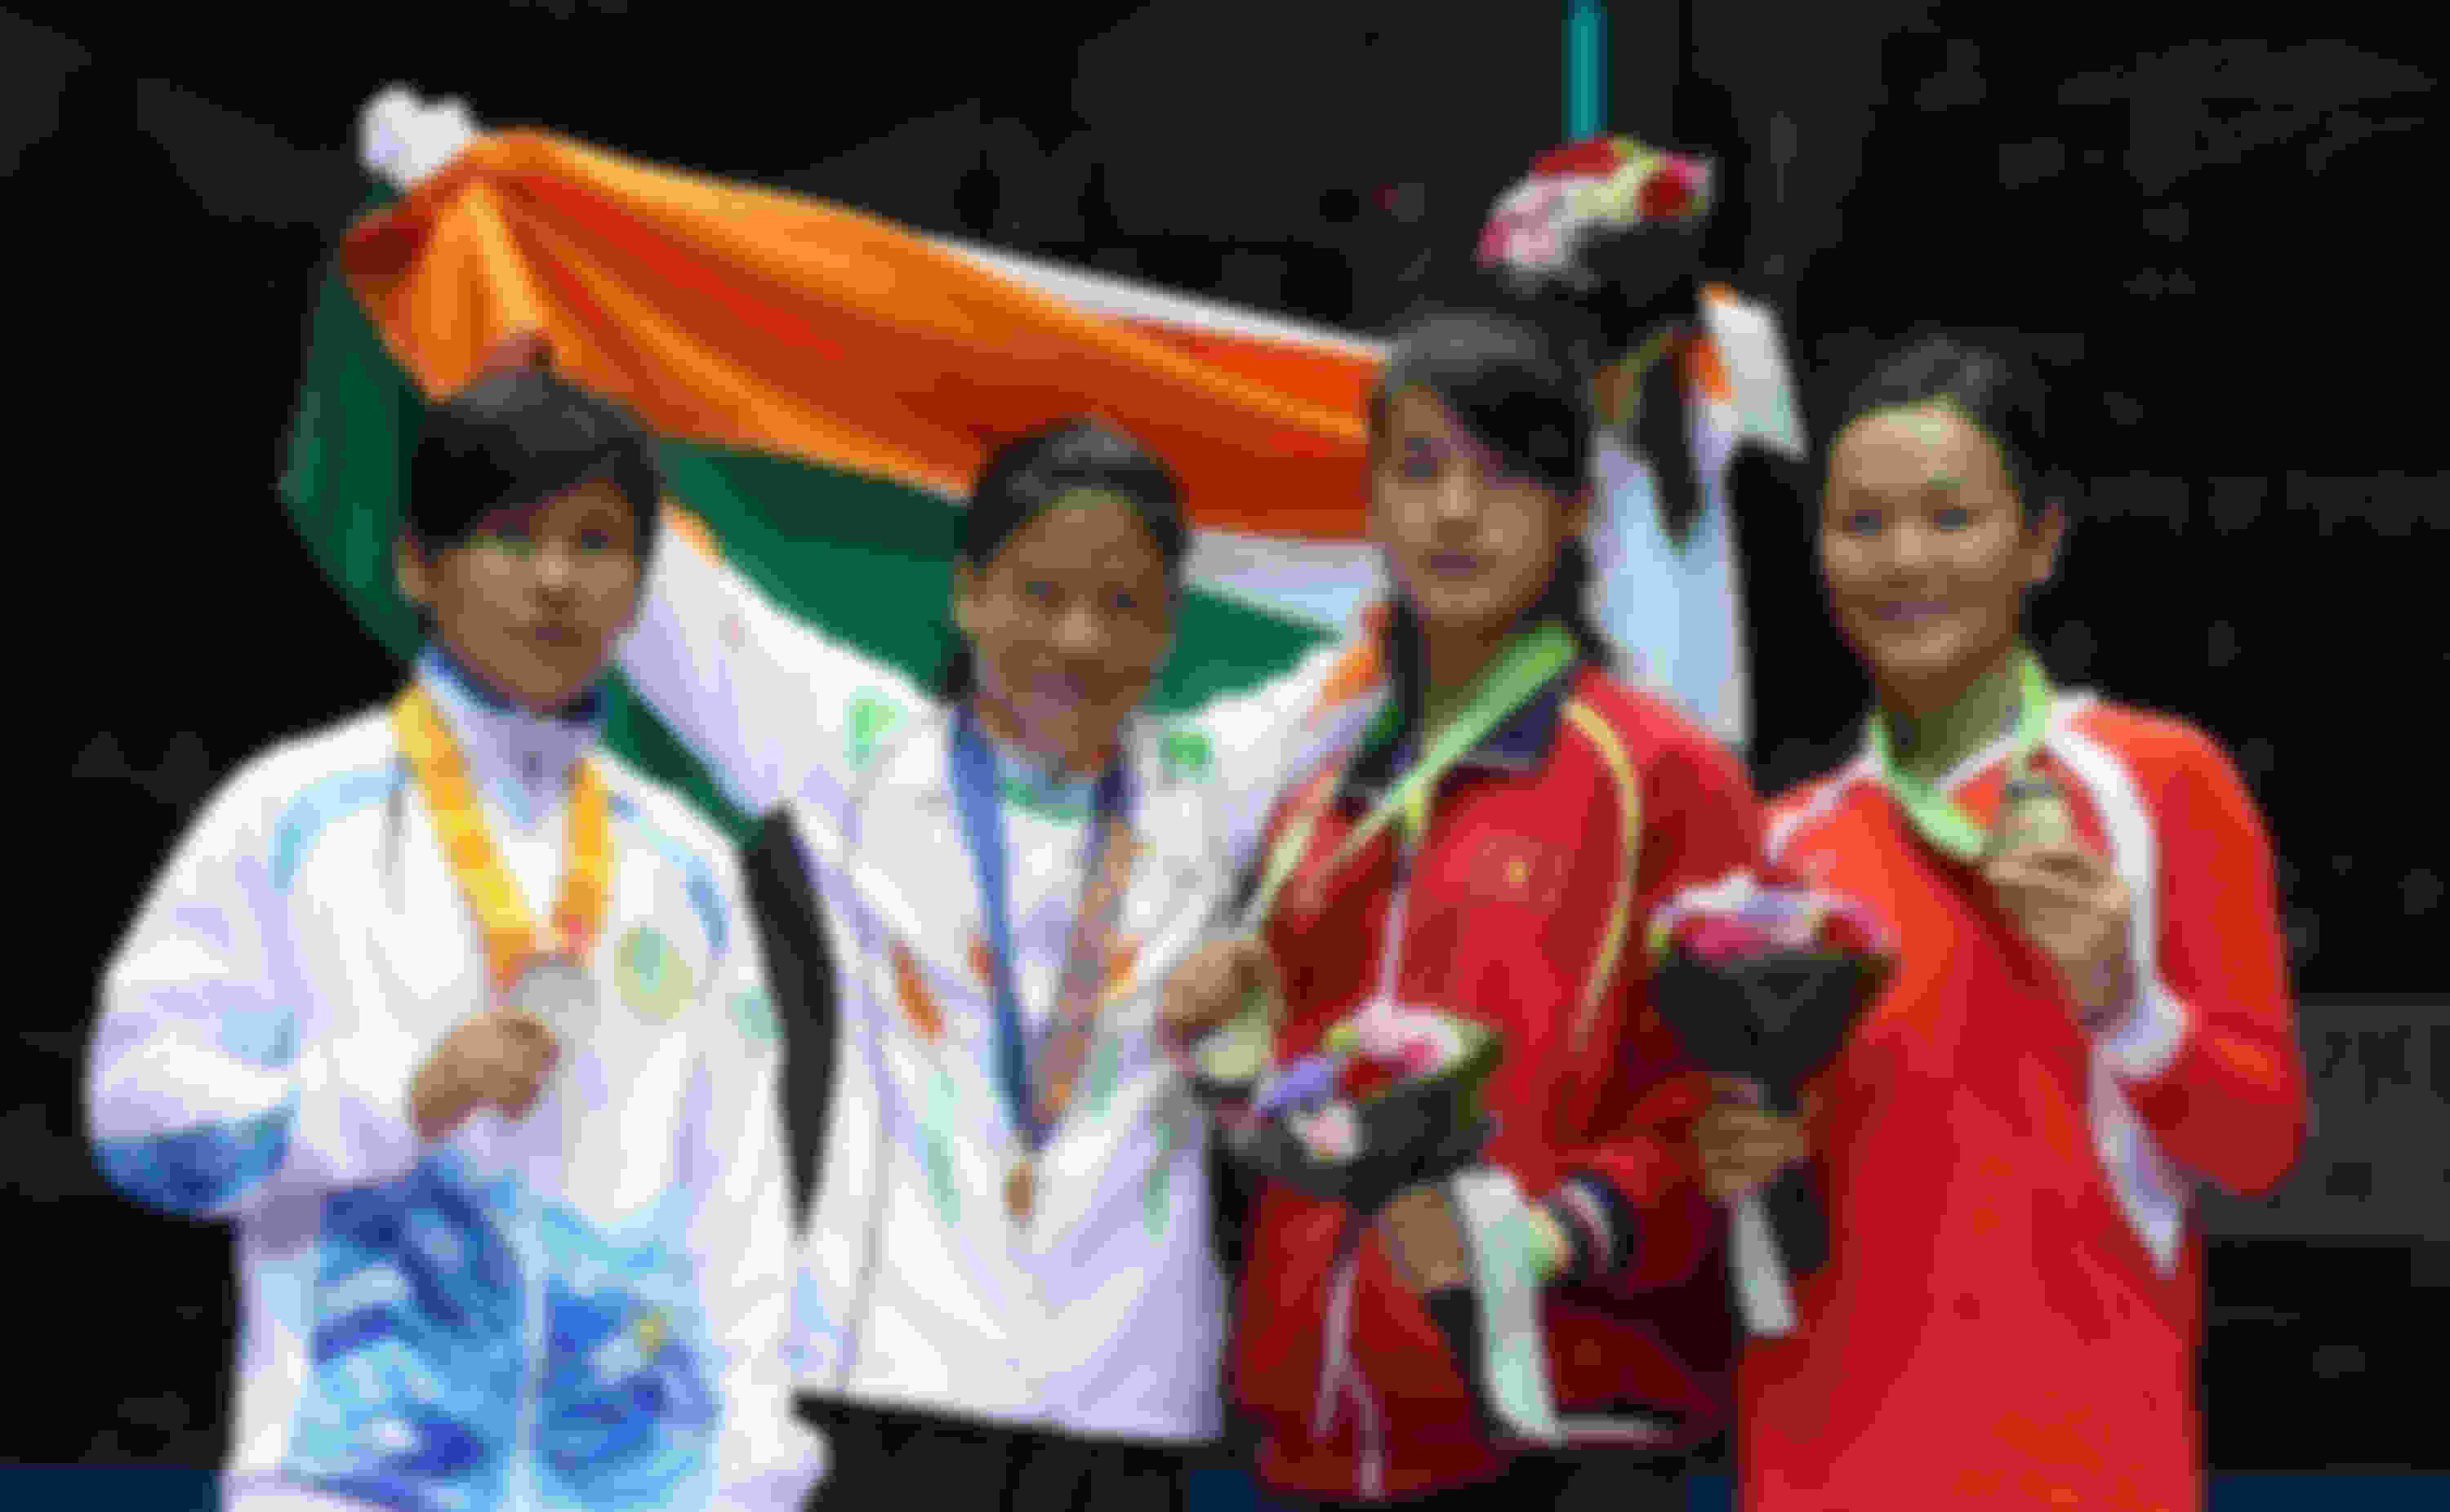 एमसी मैरी कॉम एशियाई खेलों में मुक्केबाज़ी का स्वर्ण पदक जीतने वाली पहली भारतीय महिला बनीं। 